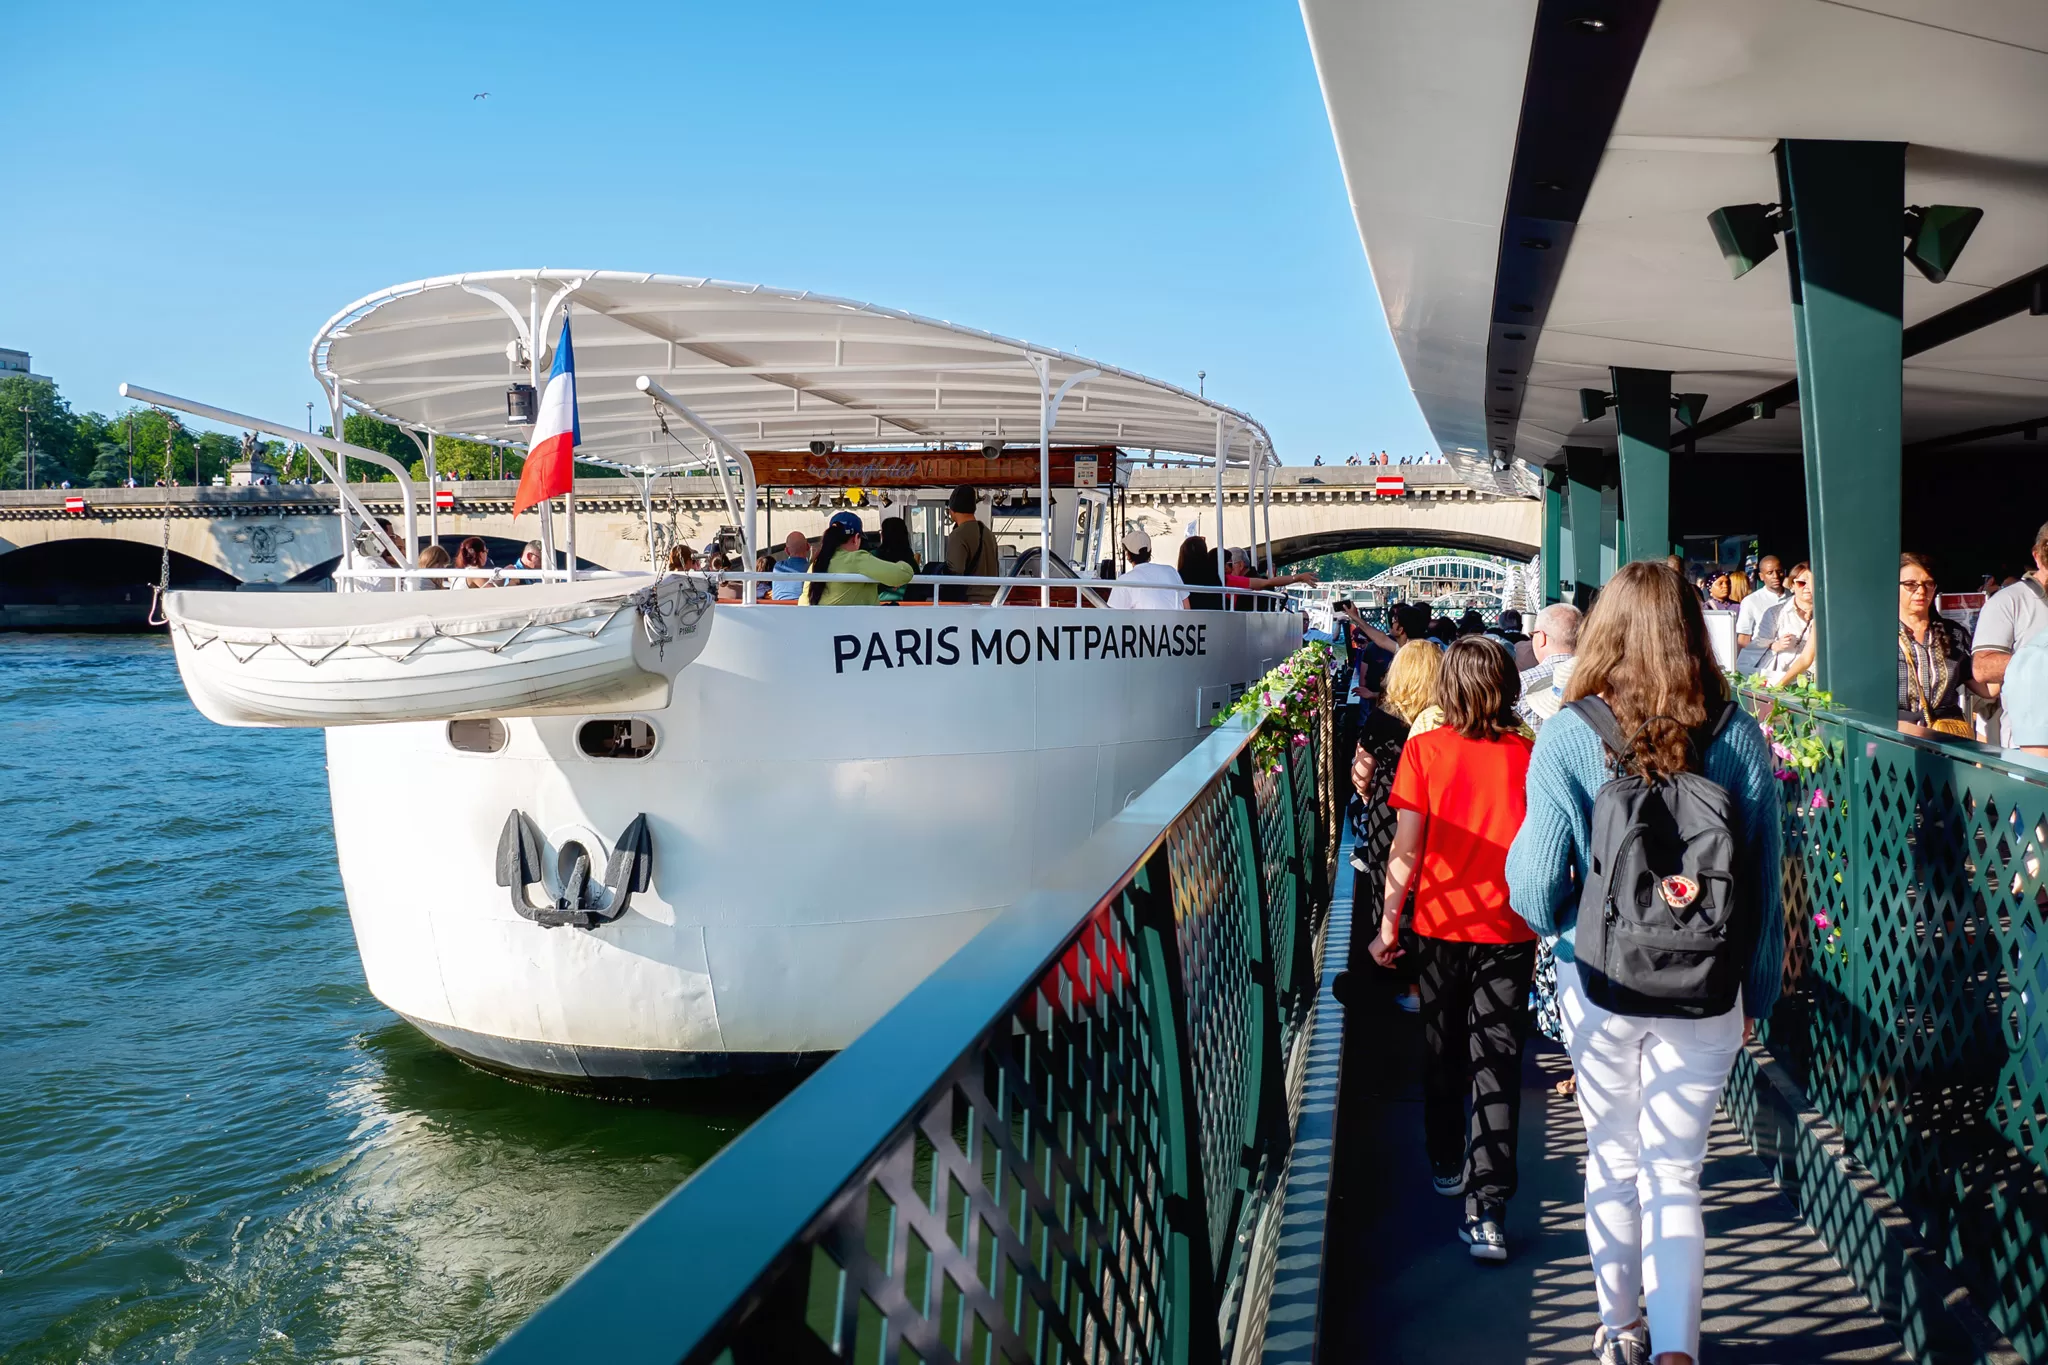 Boarding a Vedettes de Paris boat cruise. 